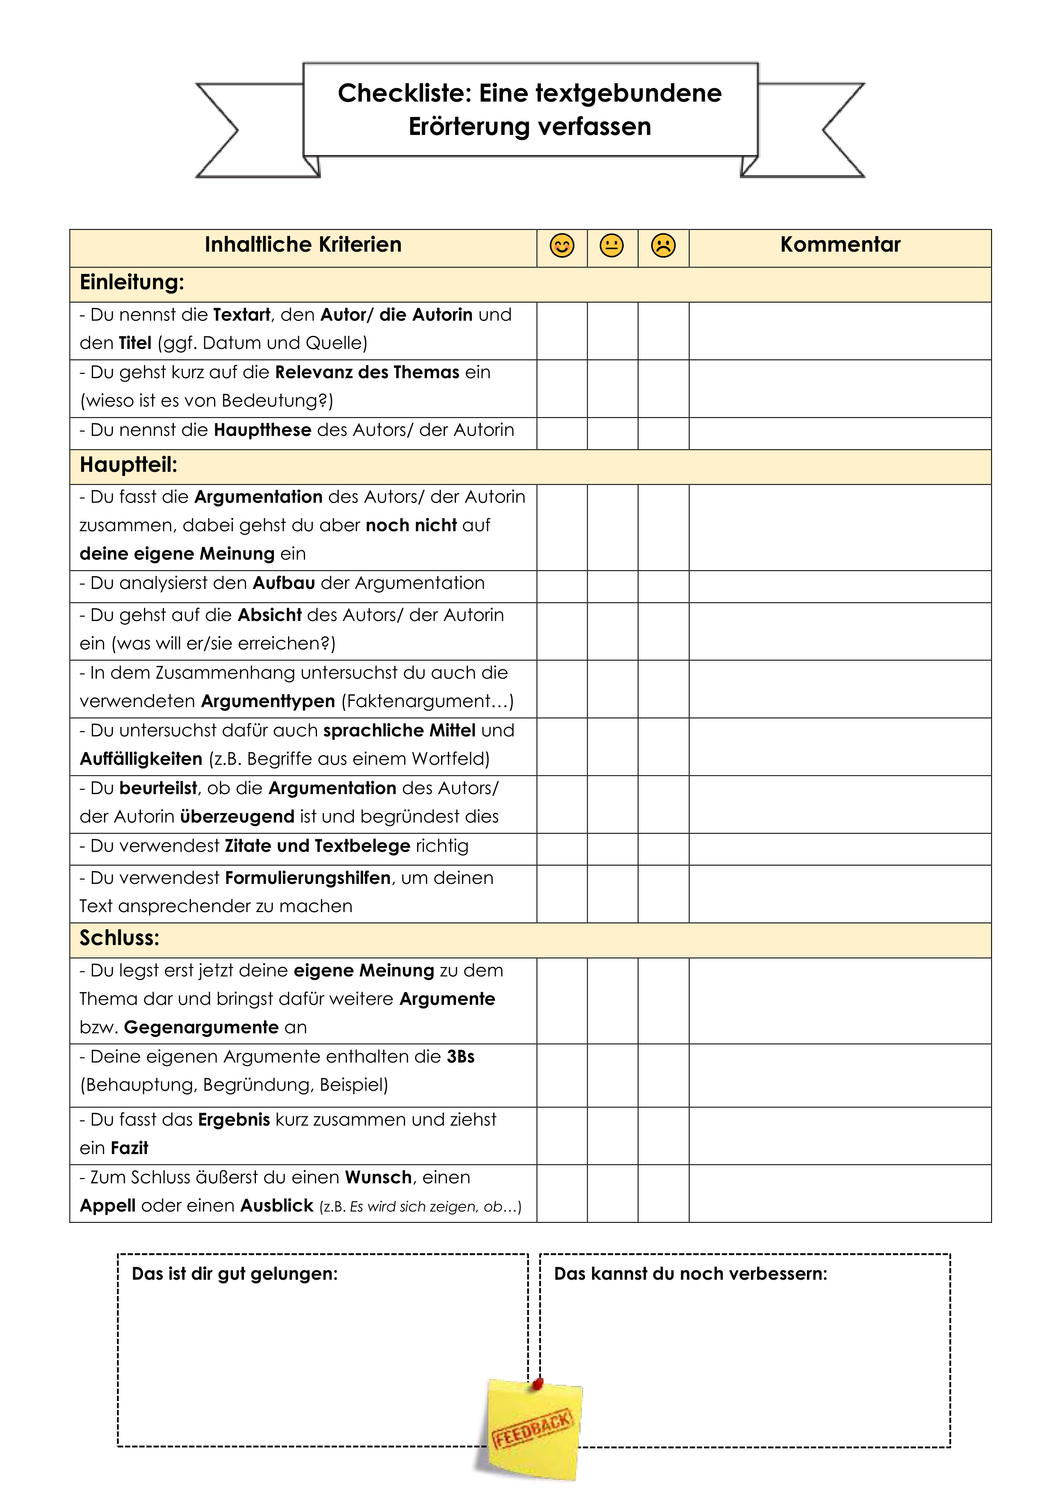 Checkliste Textgebundene Erorterung Argumentieren Feedback Unterrichtsmaterial Im Fach Deutsch Textgebundene Erorterung Erorterung Lernen Tipps Schule